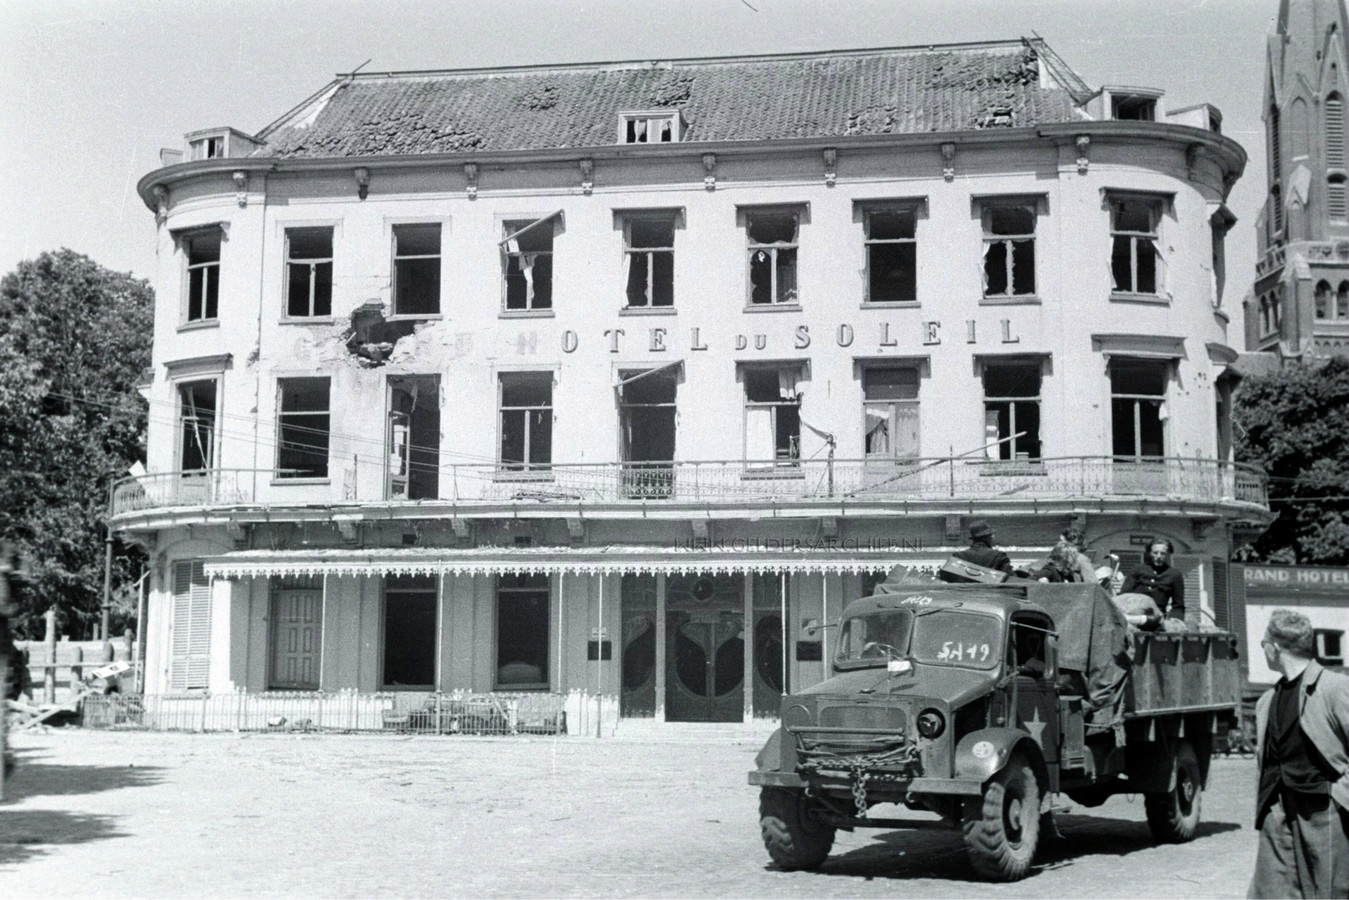 Grand Hotel Du Soleil in 1945. Een voltreffer heeft het woord ‘Grand’ van de gevel geblazen. Op de geallieerde vrachtwagen terugkerende evacués.